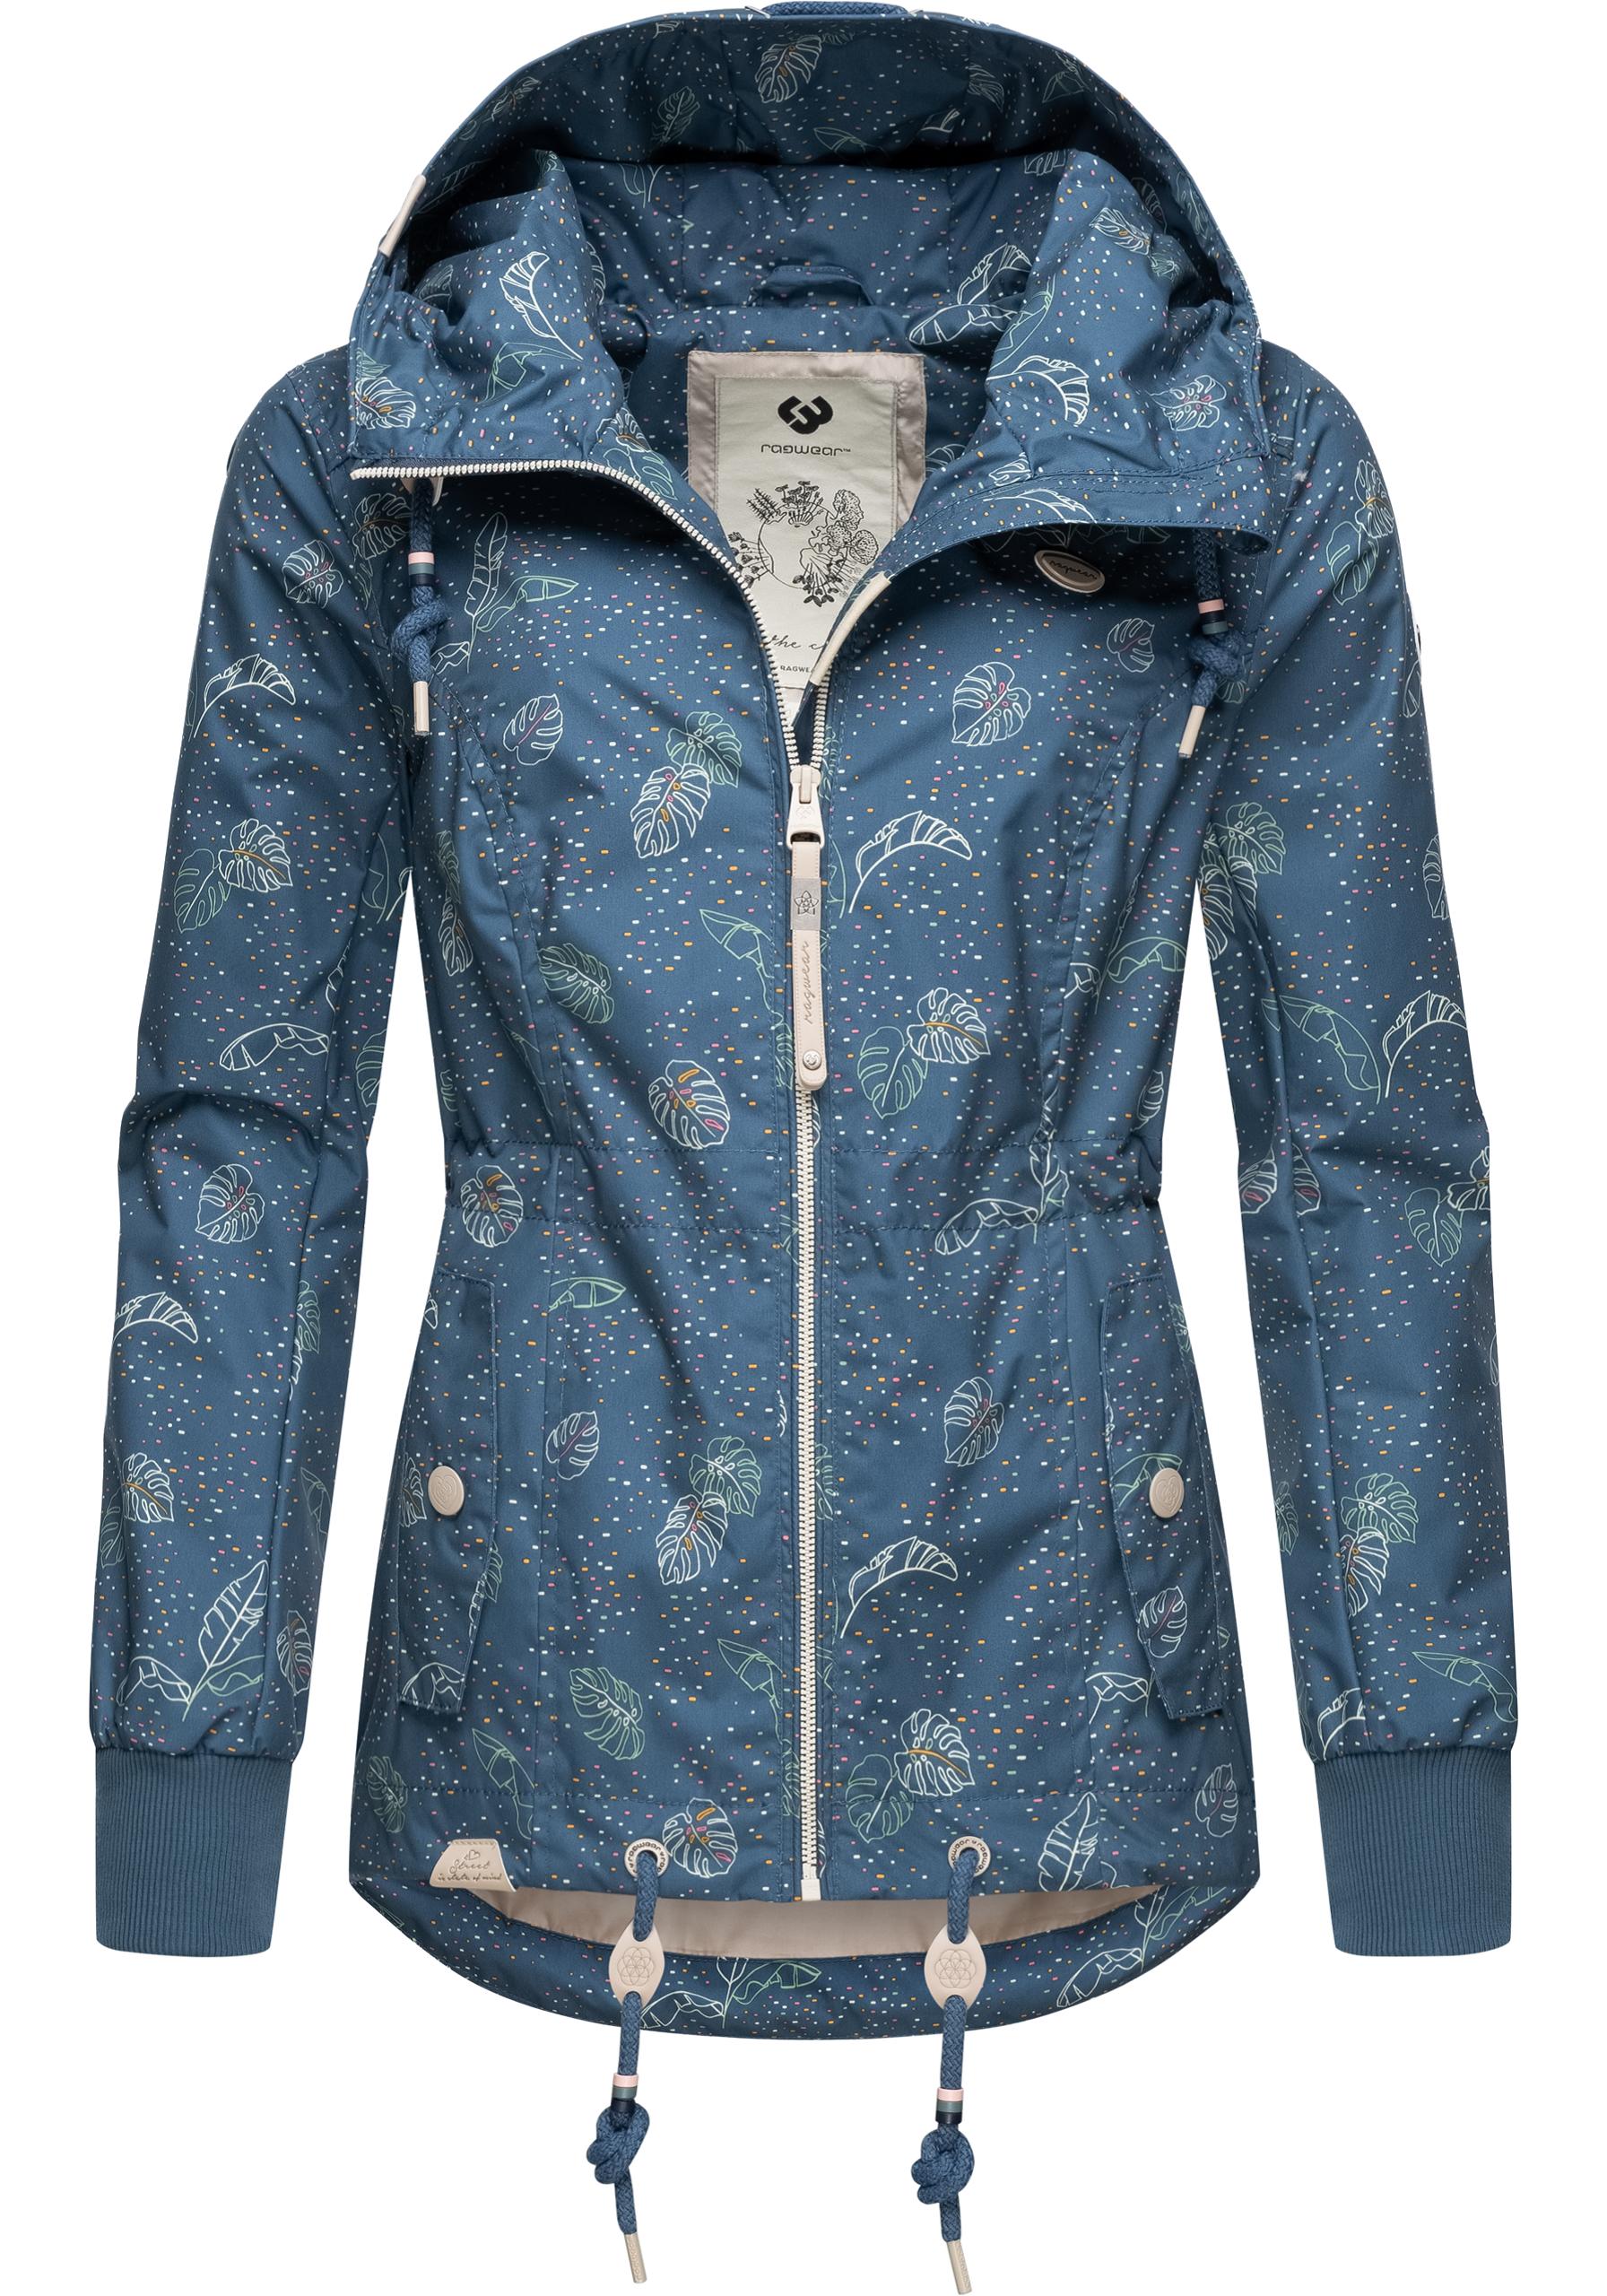 Ragwear Damen Übergangs-Jacke Outdoorjacke mit Kapuze leicht Danka Leaves Blue22 Gr. S